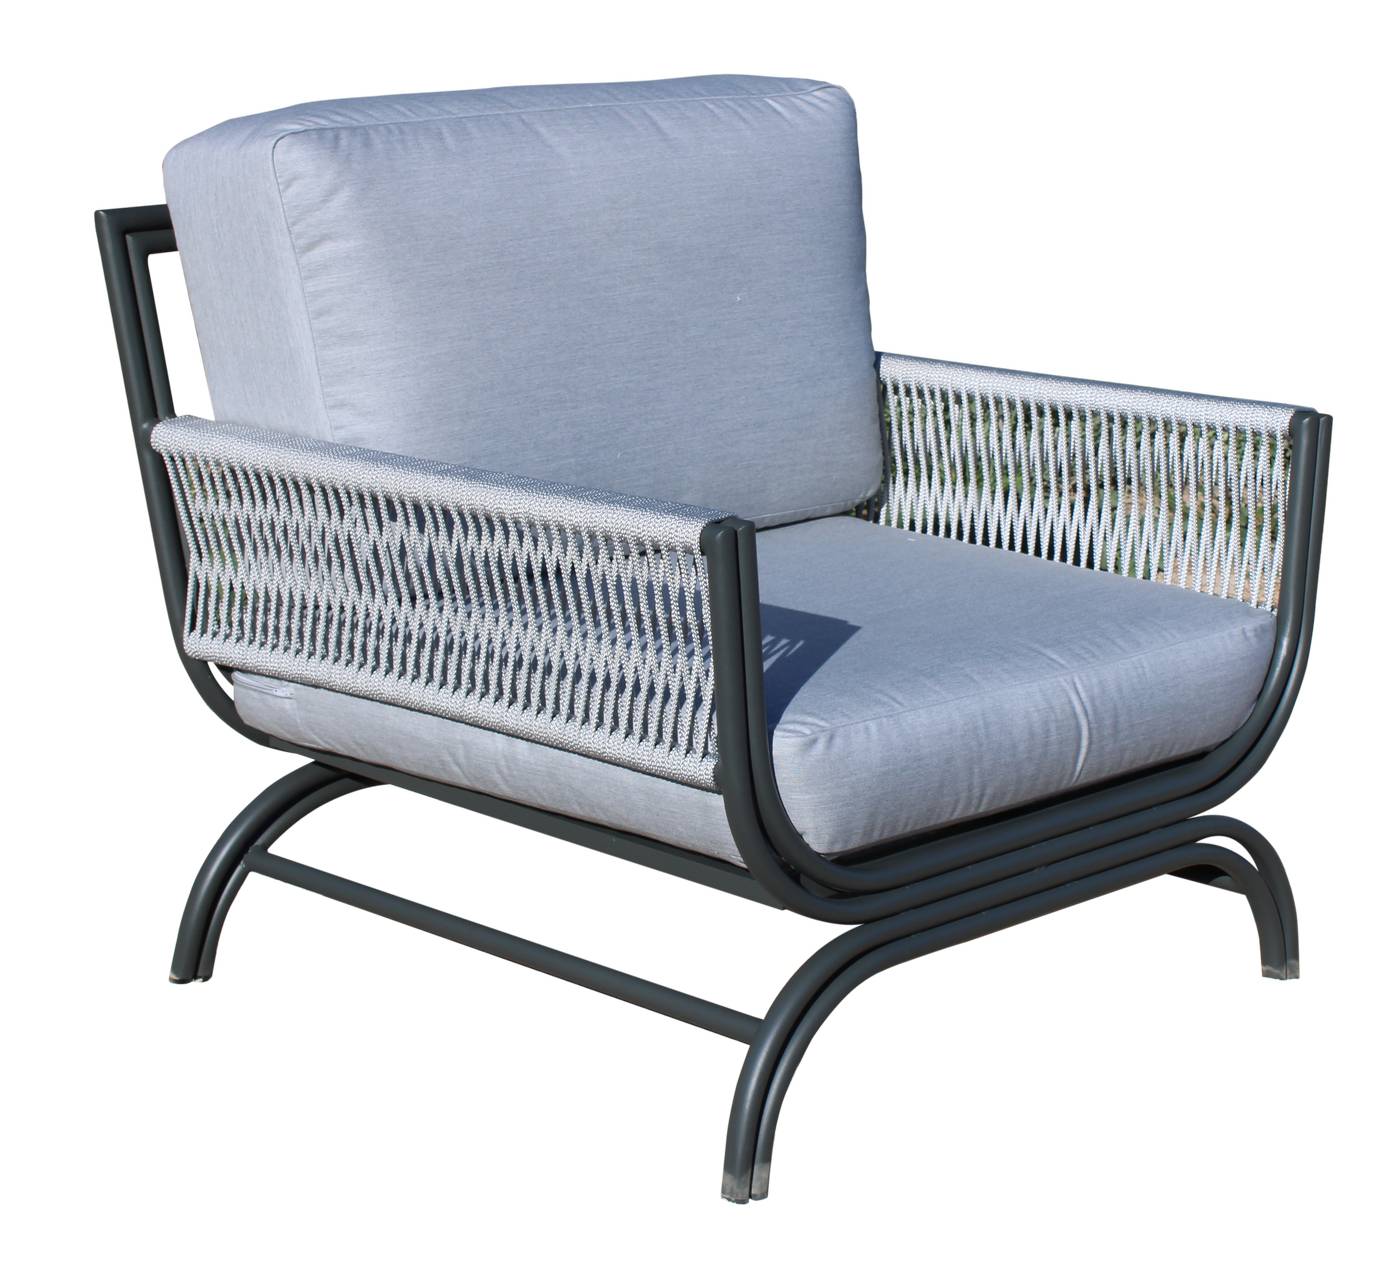 Set Aluminio Saona-8 - Conjunto de alumino y cuerda: sofá de 3 plazas + 2 sillones + 1 mesa de centro. Colores: blanco, antracita, marrón, champagne o plata.